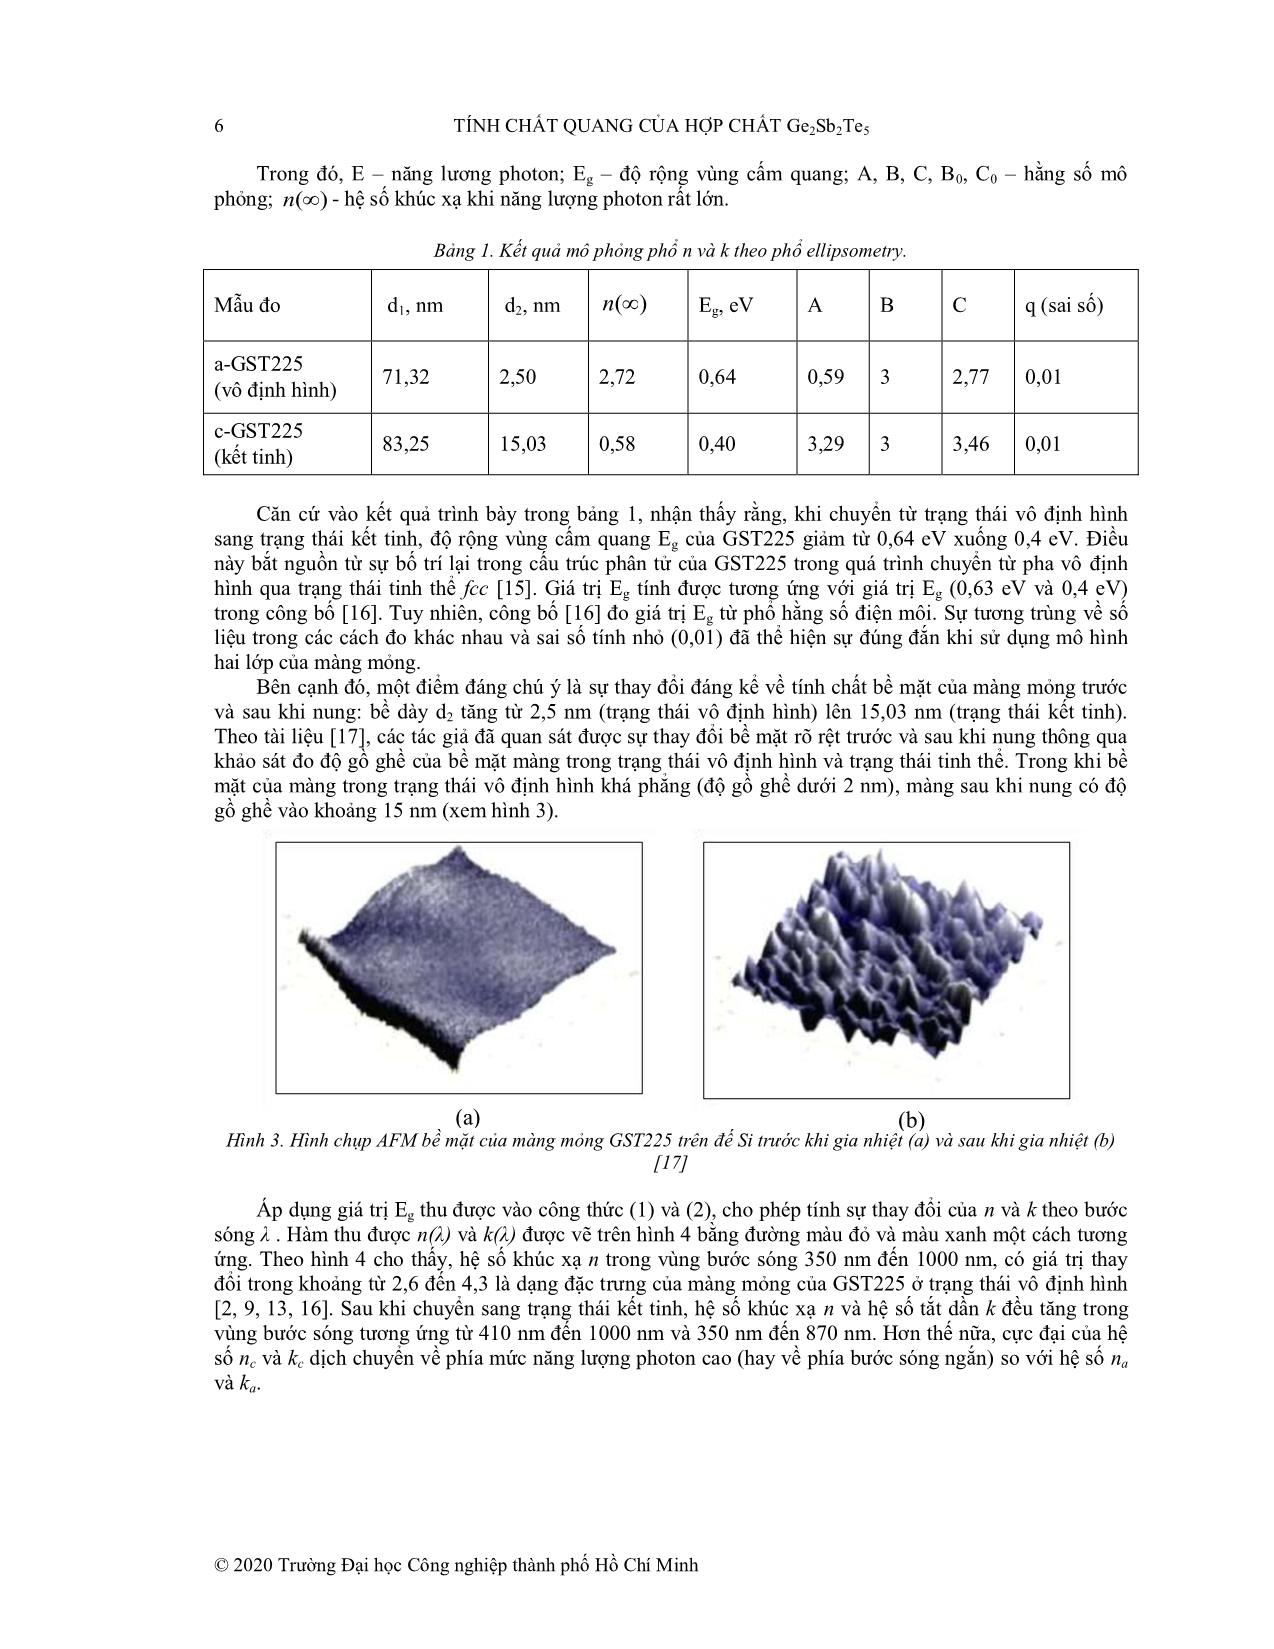 Tính chất quang của hợp chất Ge₂Sb₂Te₅ trang 4